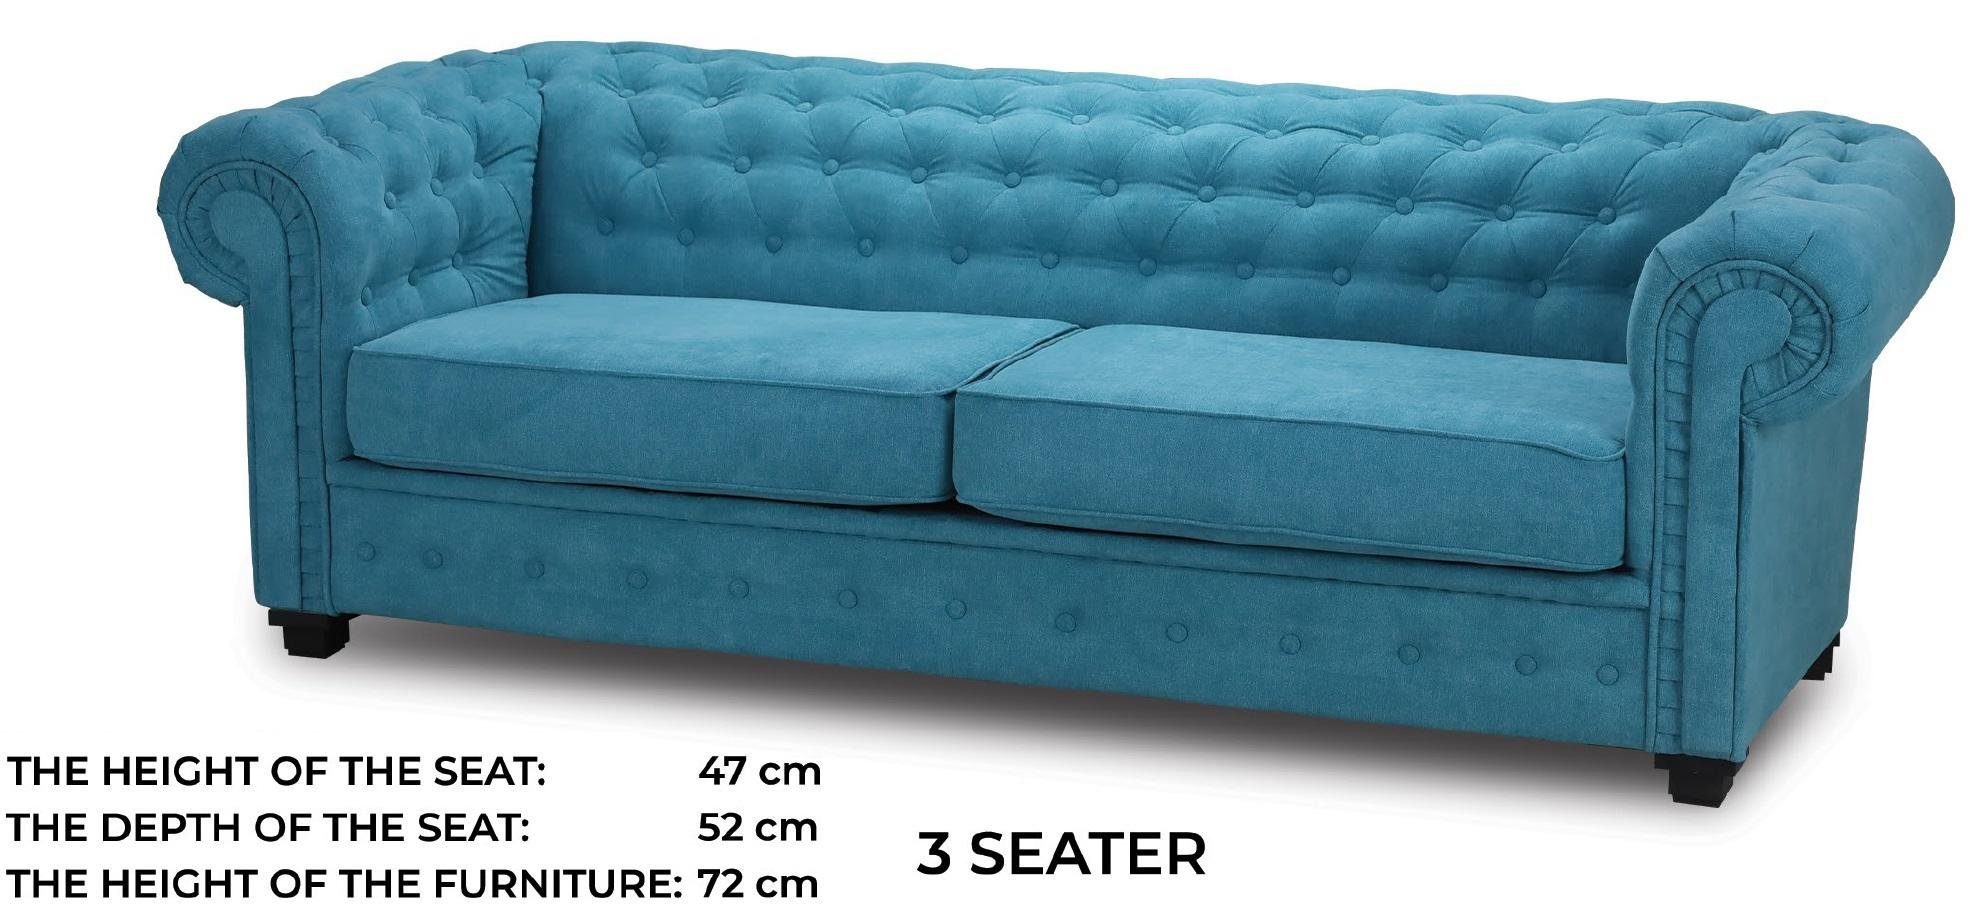 JVmoebel Sofa Blauer Dreisitzer Couch Textil Turkis Sofa Polster Möbel Einrichtung, Made in Europe